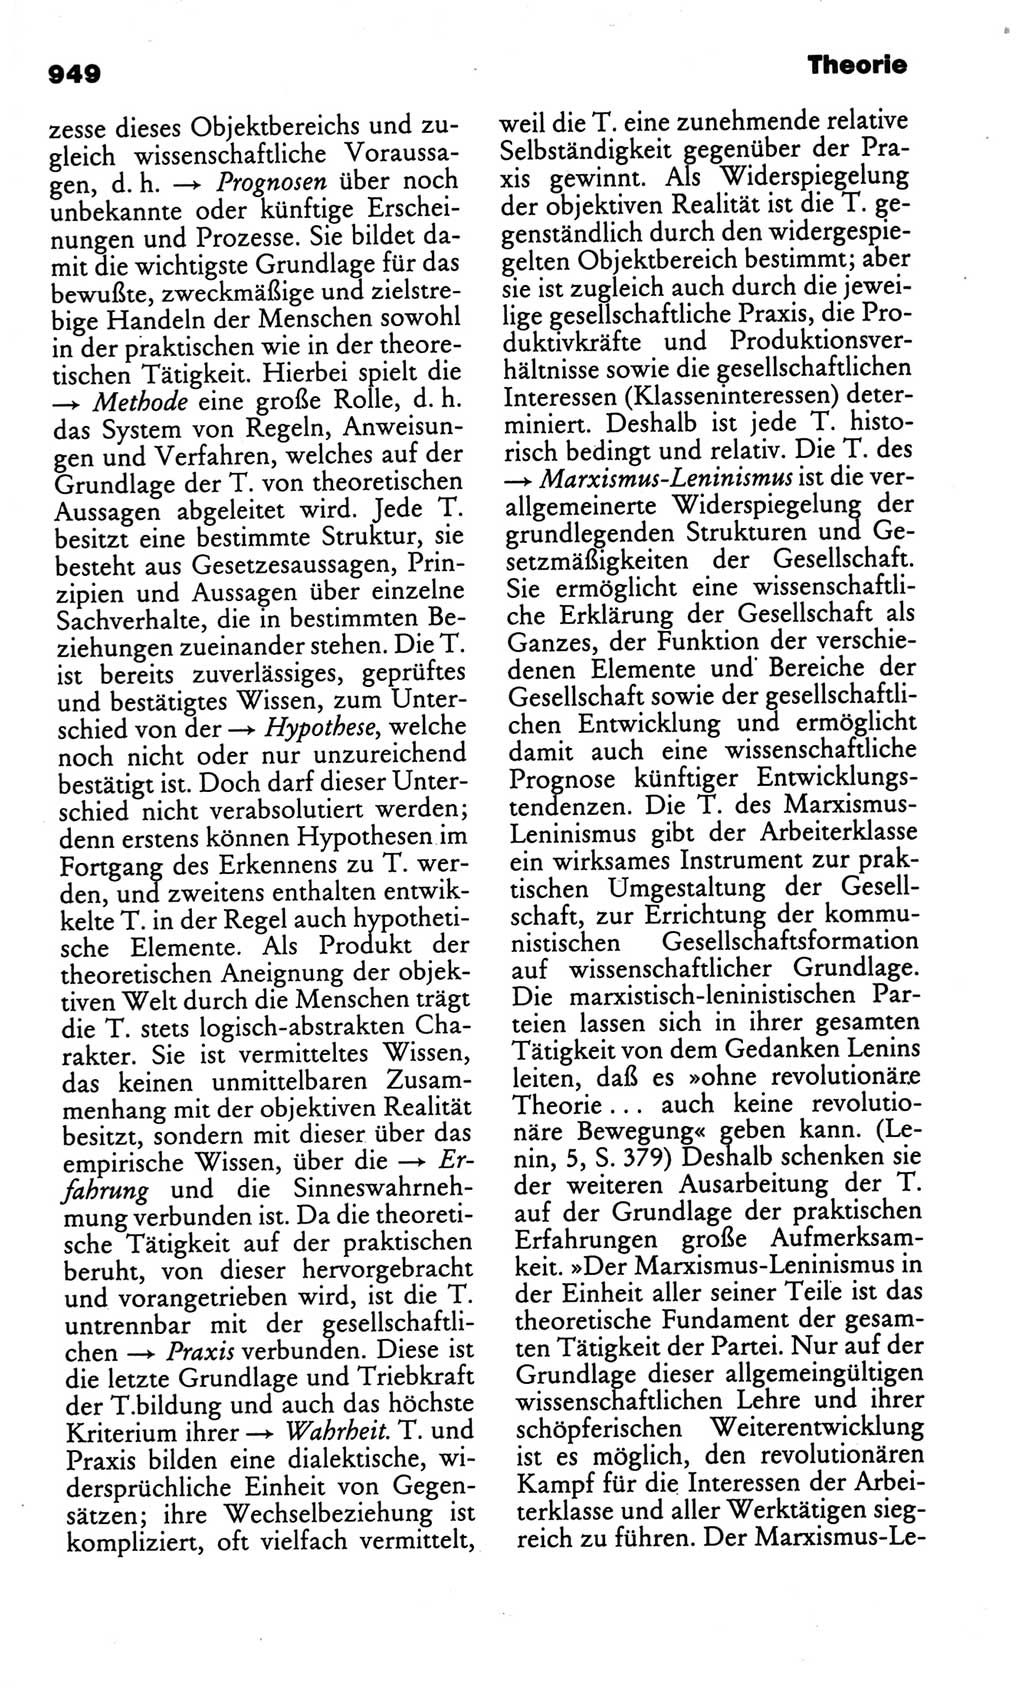 Kleines politisches Wörterbuch [Deutsche Demokratische Republik (DDR)] 1986, Seite 949 (Kl. pol. Wb. DDR 1986, S. 949)